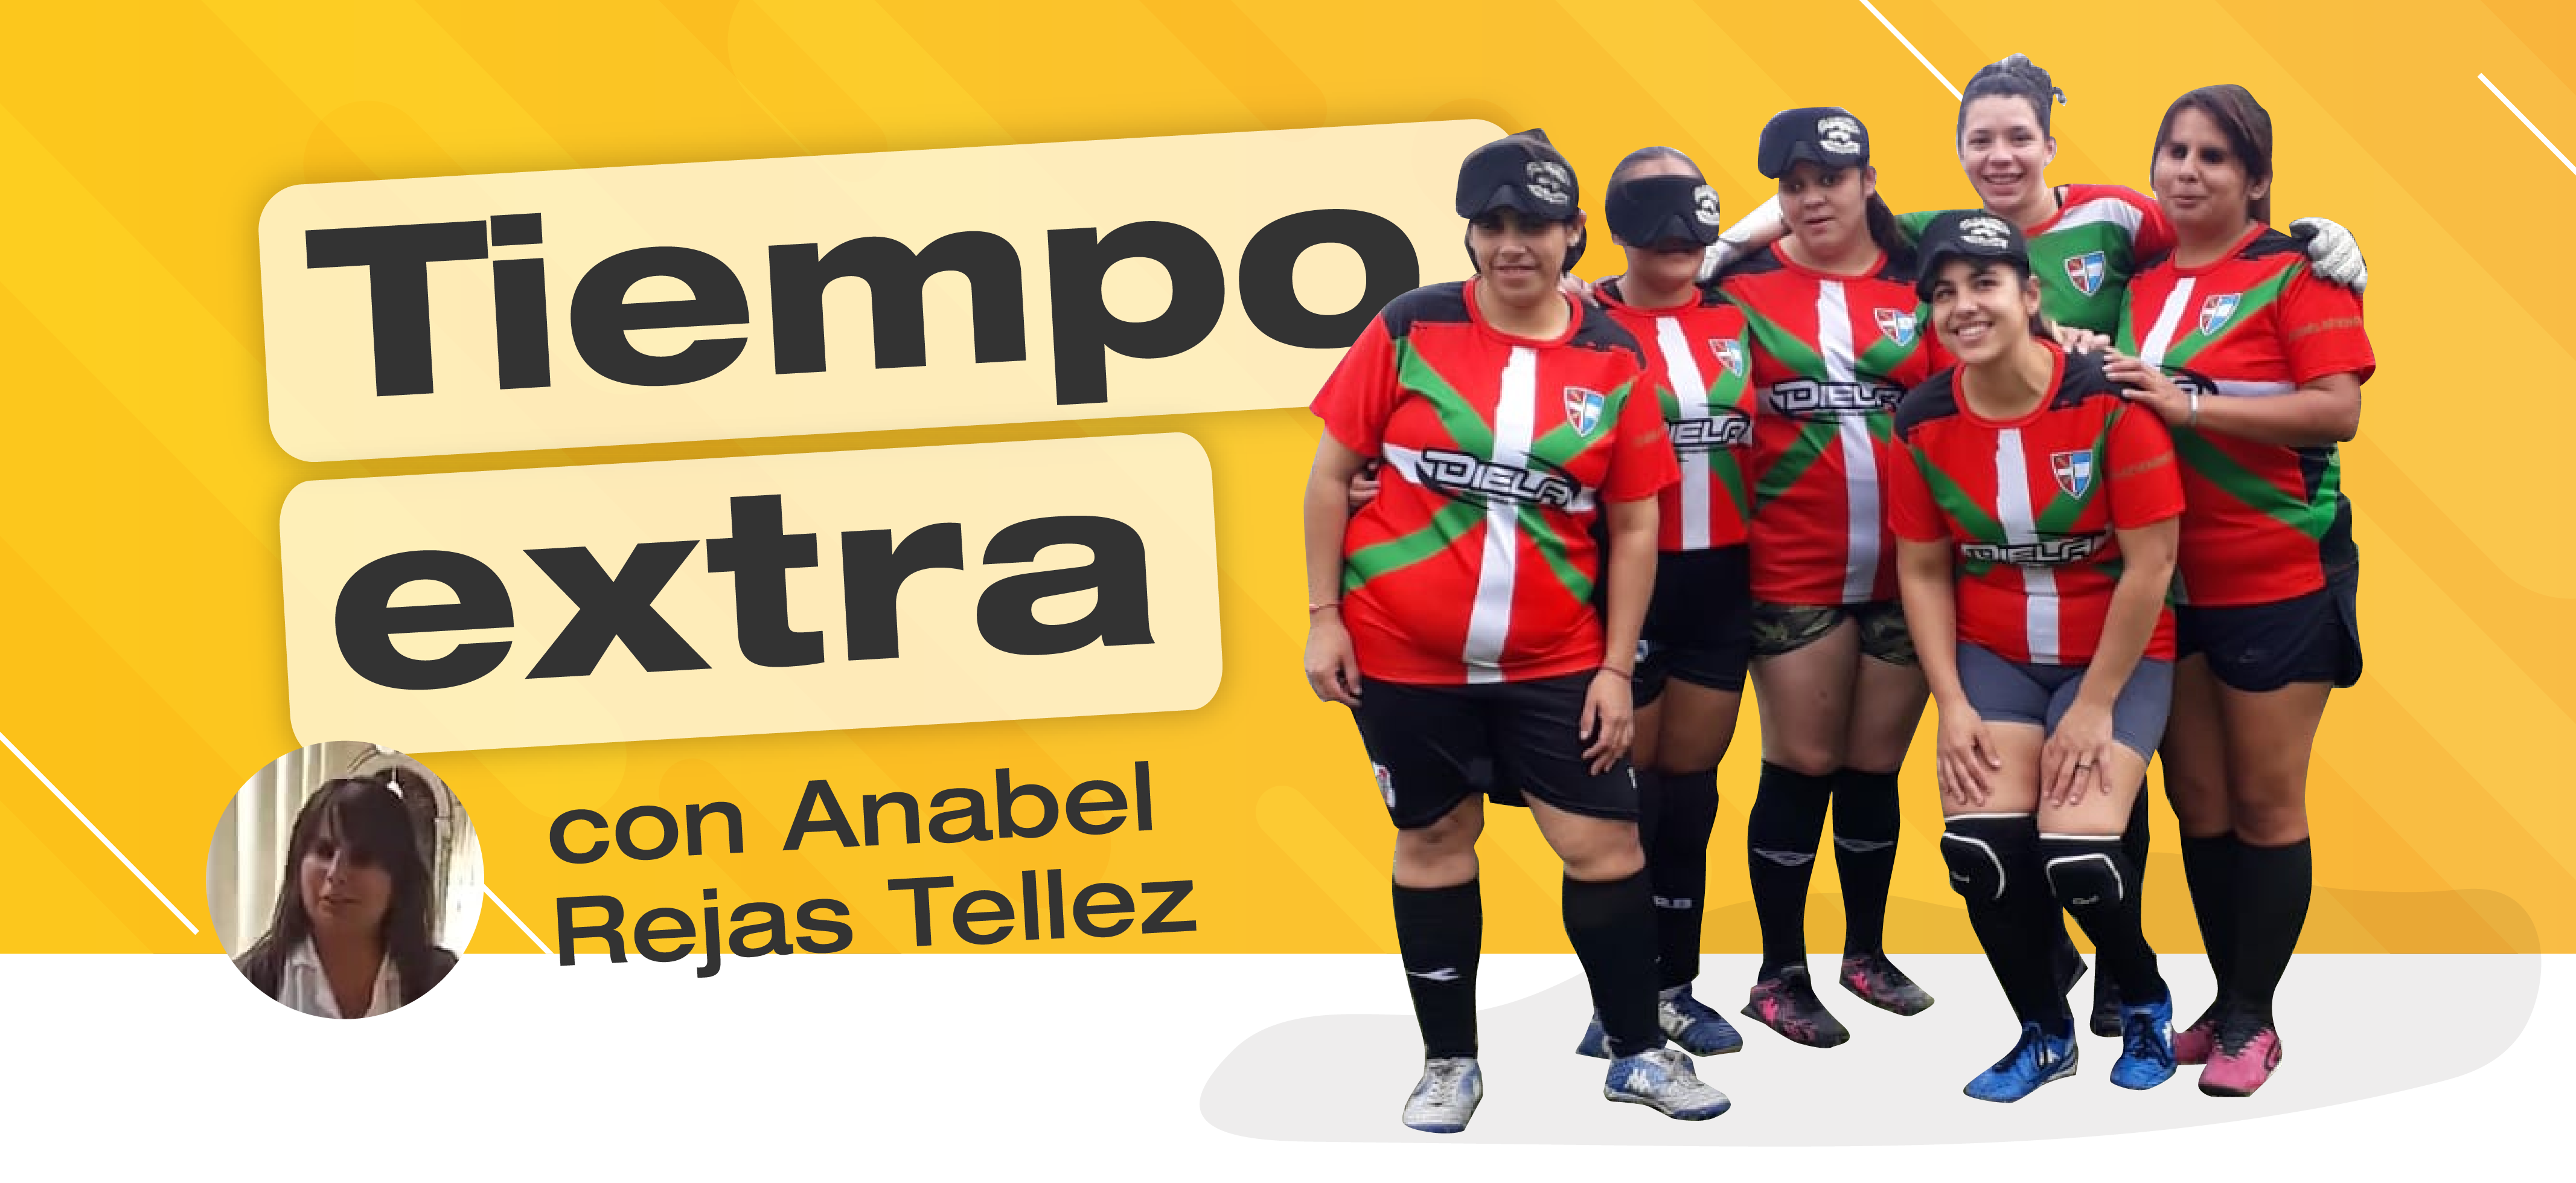 Banner con el título "Tiempo Extra" y la fotografía de seis jugadoras de fútbol para personas ciegas en el margen derecho. Debajo del título se encuentra otra fotografía en miniatura de la invitada: Anabel Rejas Tellez